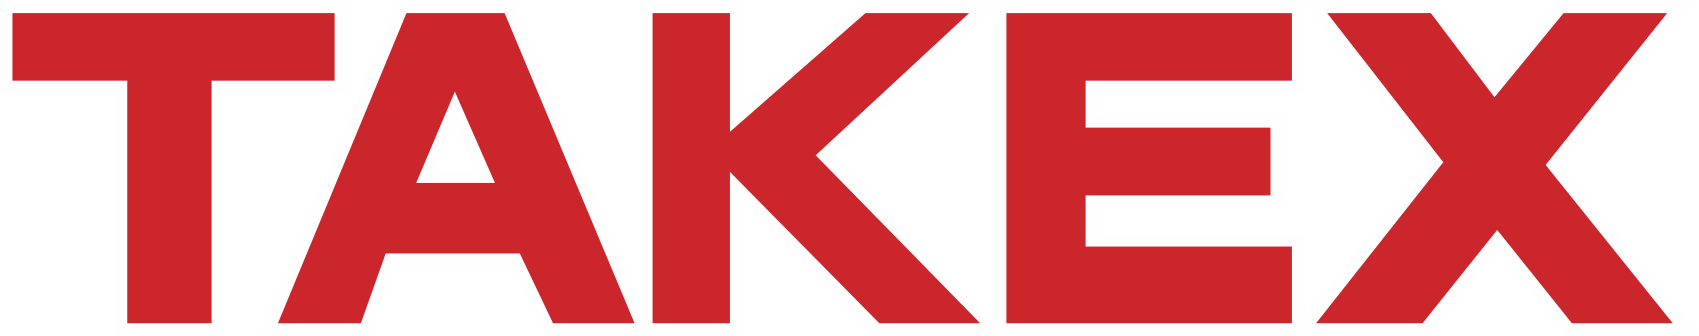 TAKEX_logo_red-1